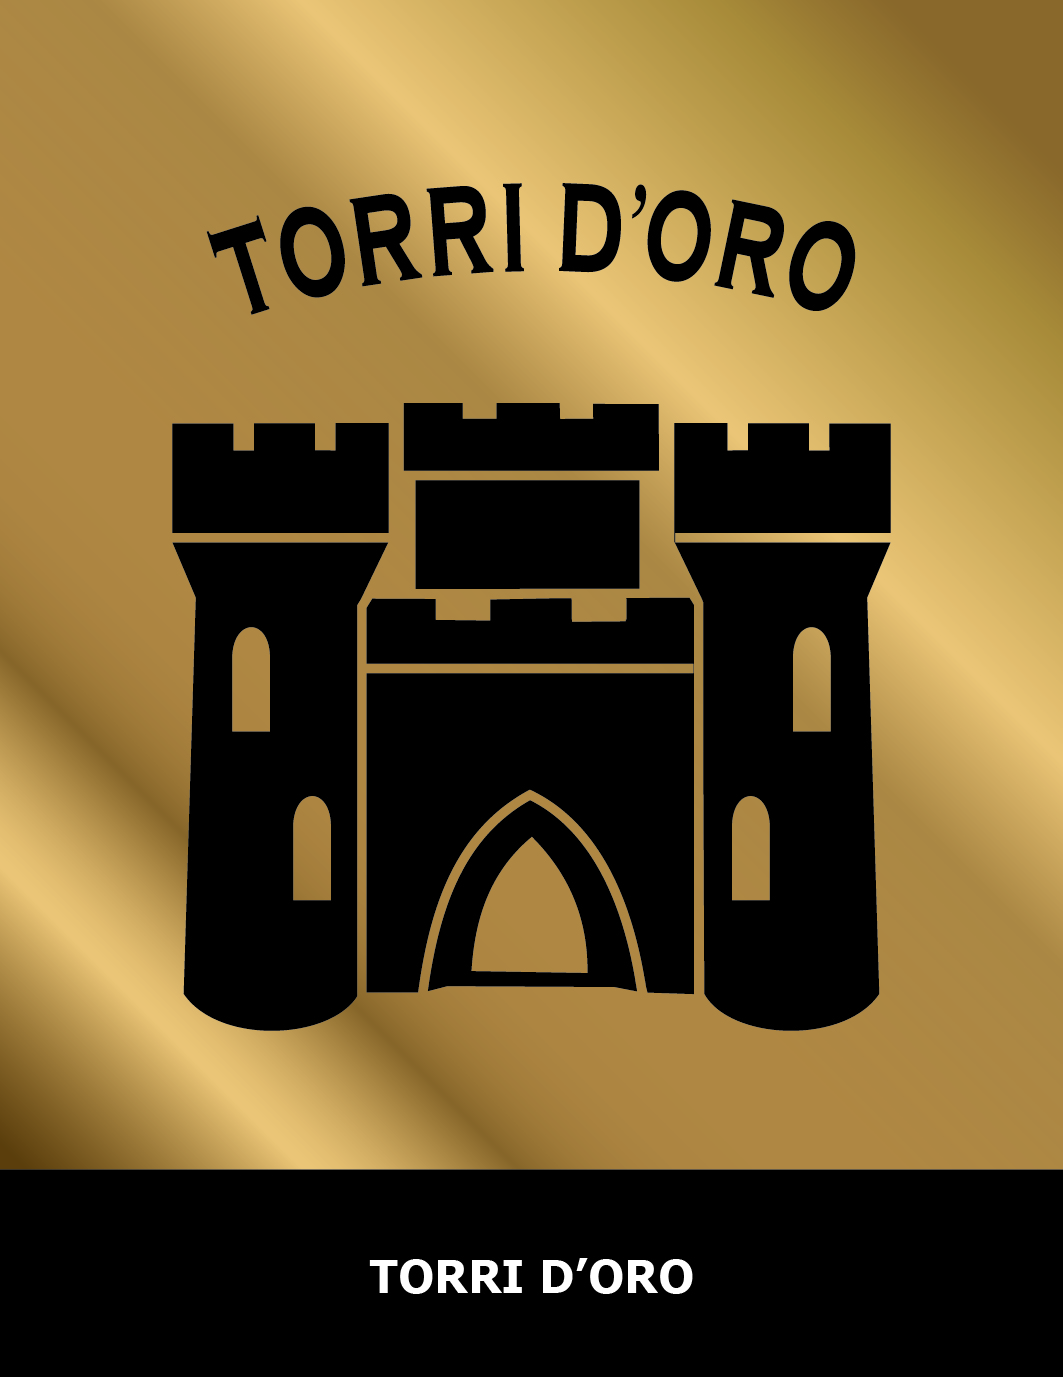 Brand Torri Doro